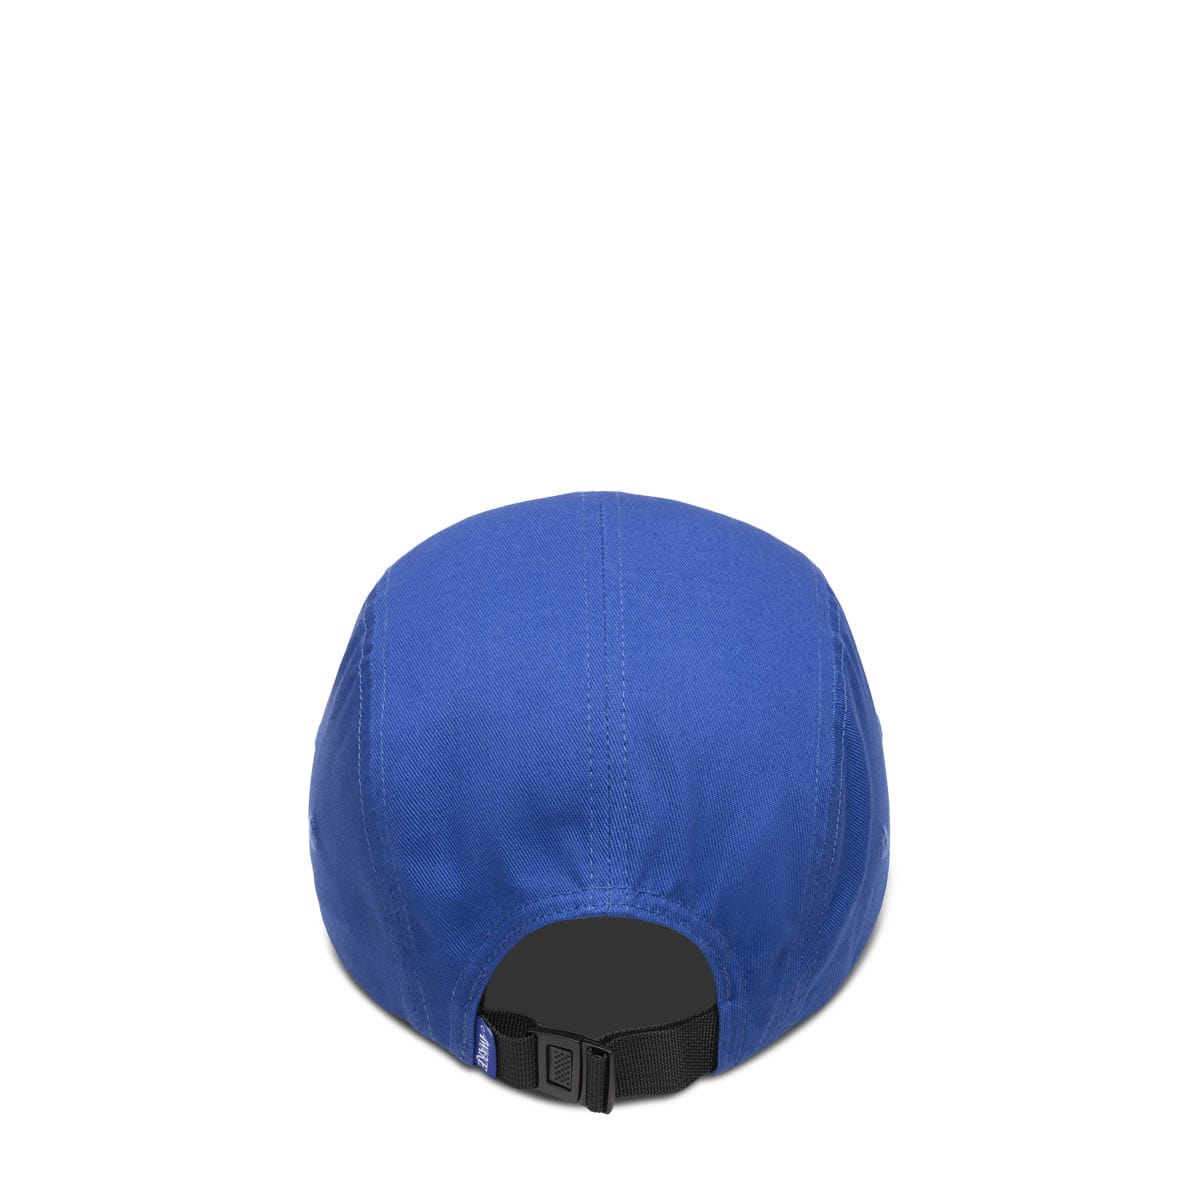 Awake NY Headwear BLUE / O/S CLASSIC LOGO 5 PANEL CAP